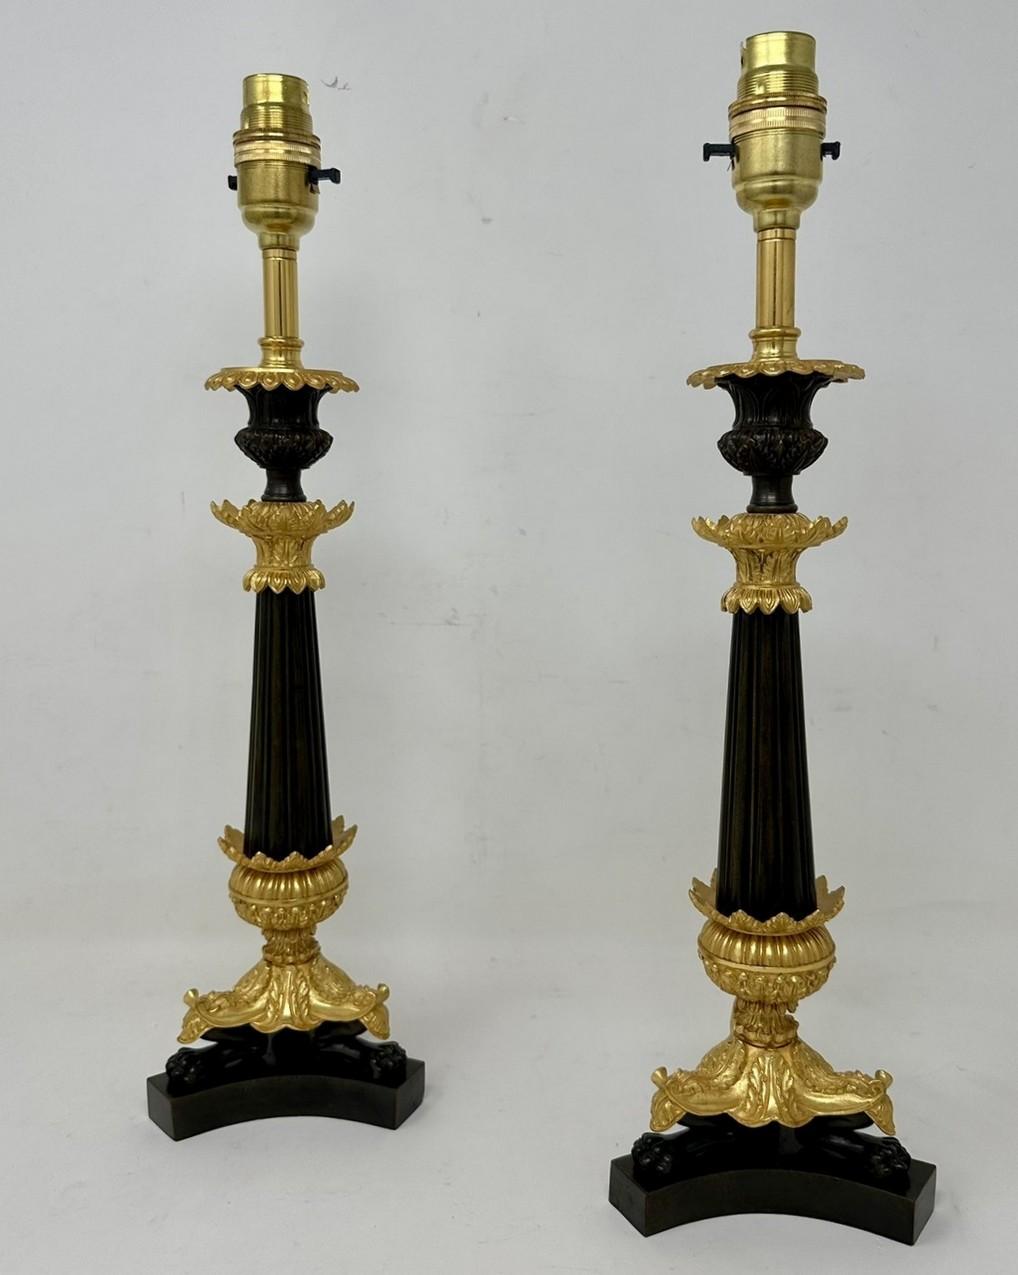 Superbe paire identique de chandeliers à une lumière en bronze et bronze doré de taille moyenne, maintenant convertis en paire de lampes de table électriques, avec une colonne centrale bronzée effilée et cannelée, chacune se terminant par trois